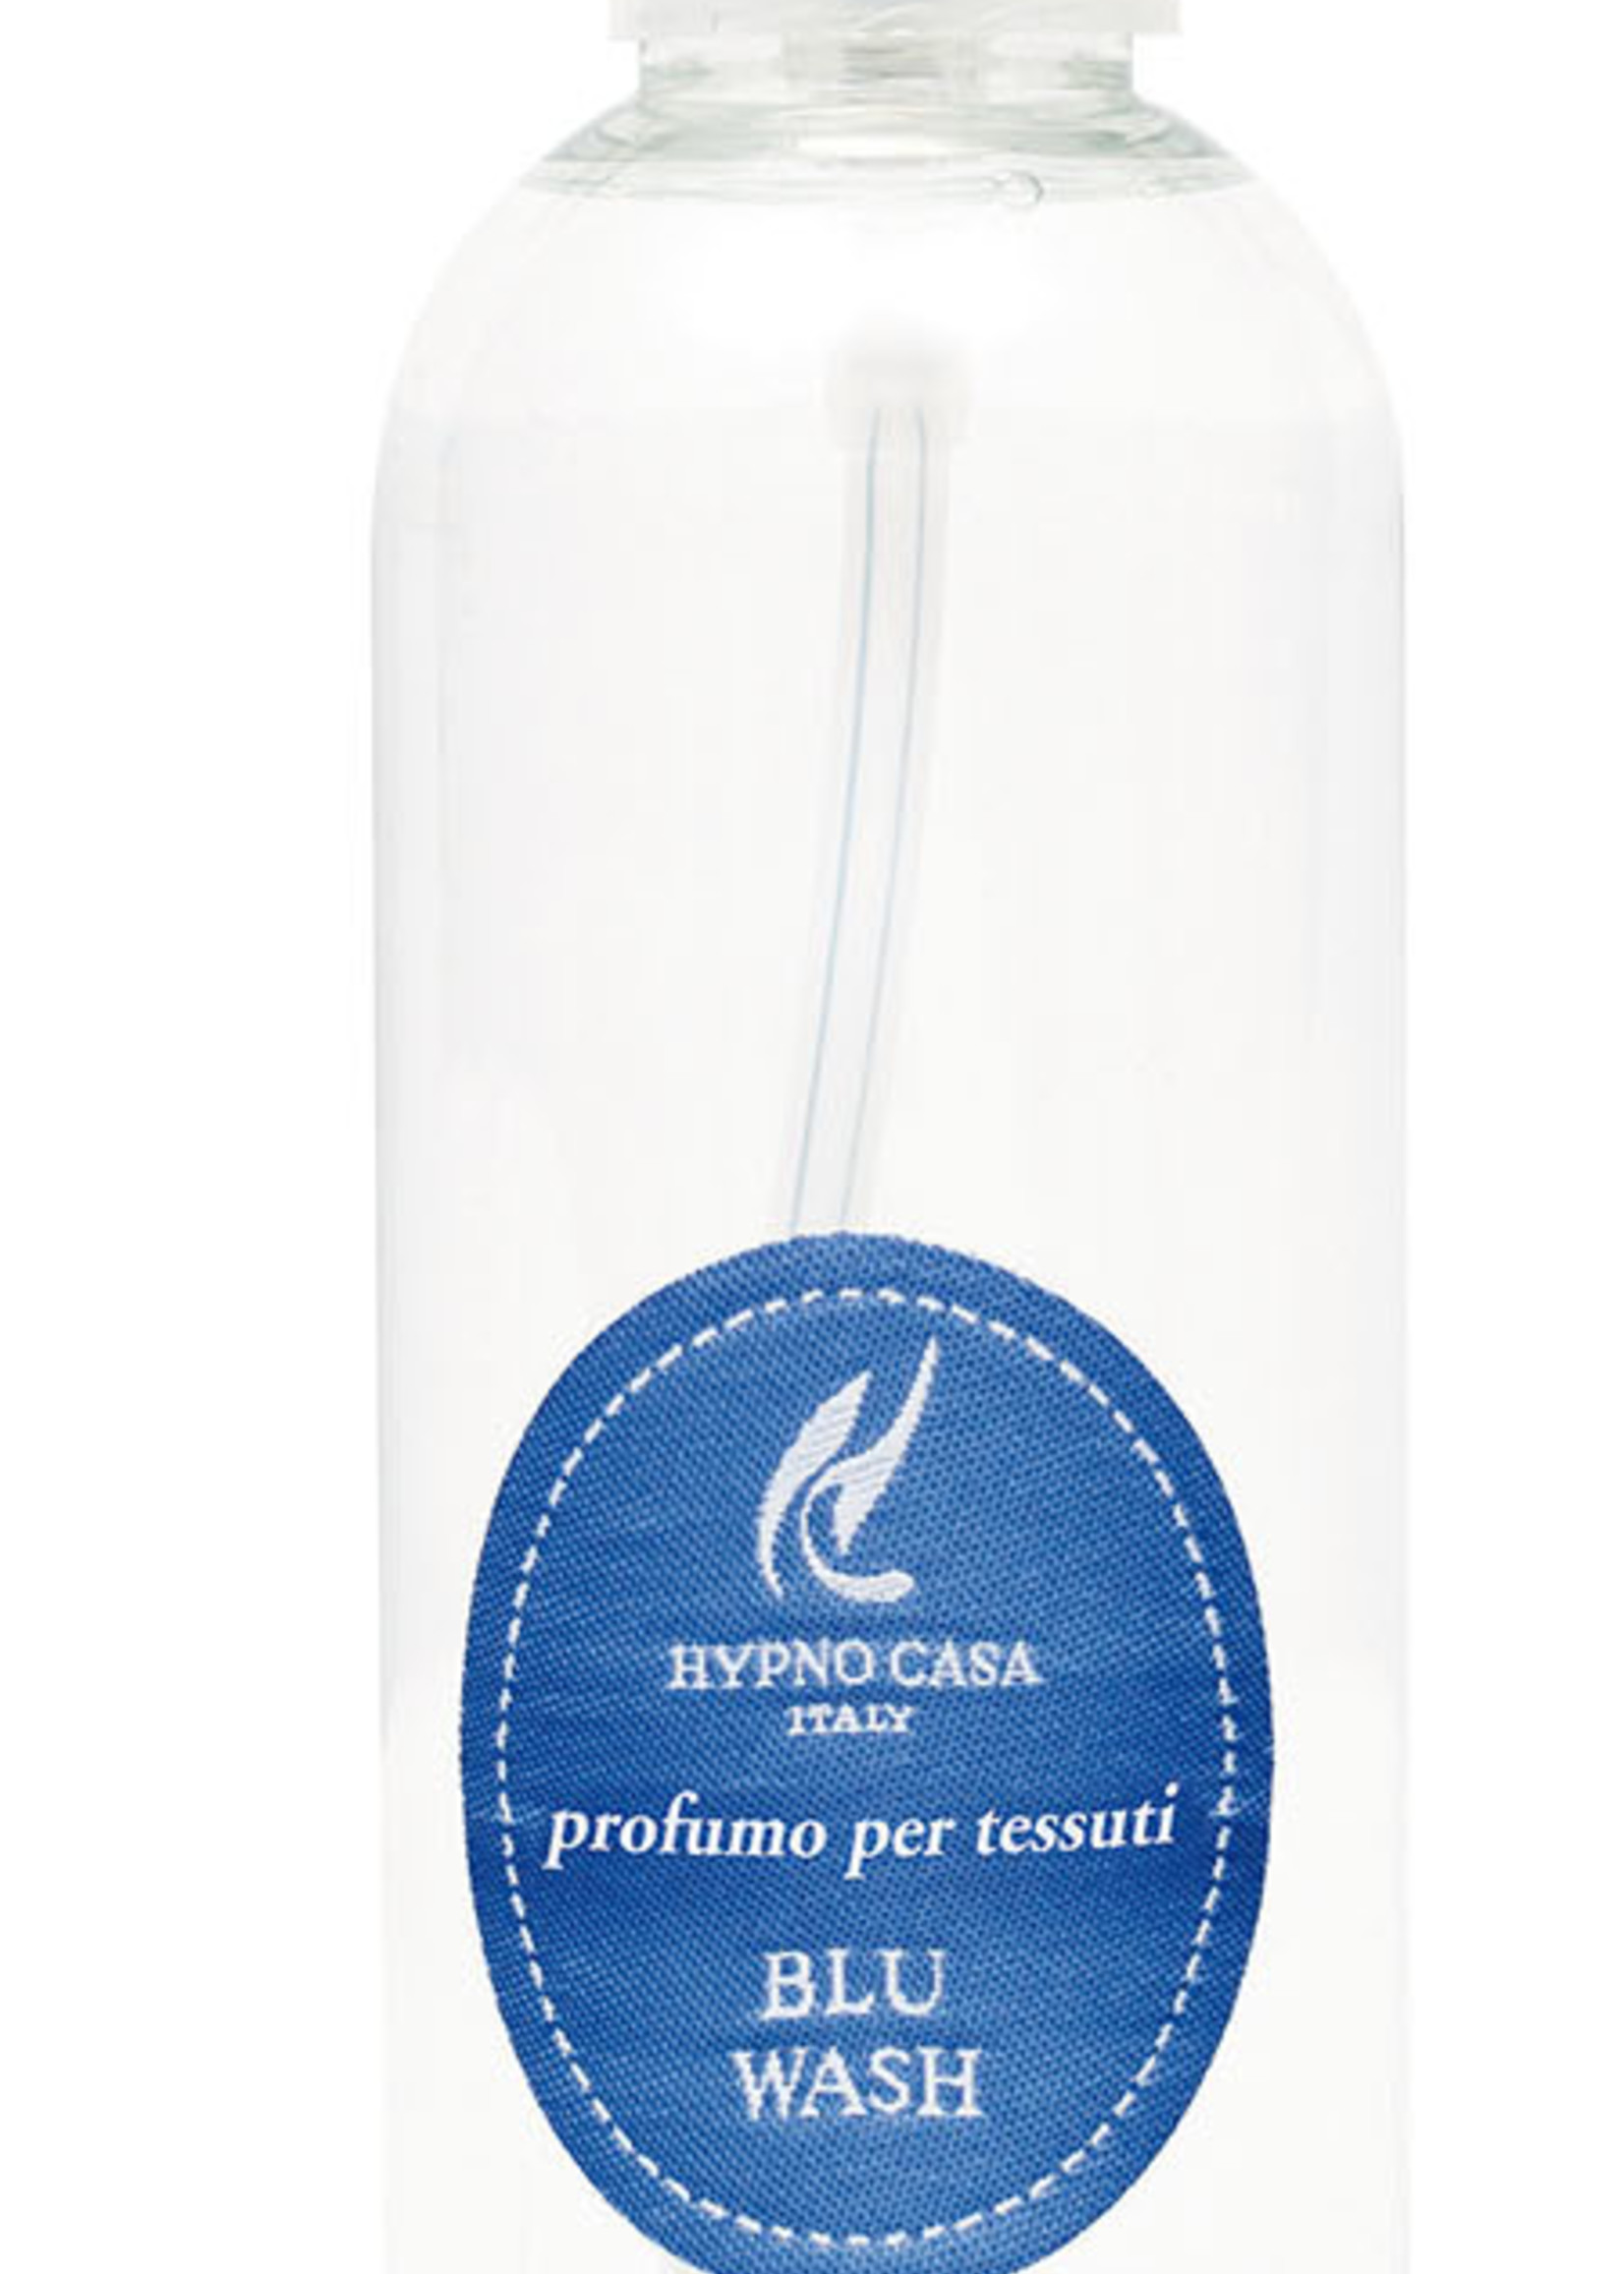 Hypno Casa Refreshing spray 250 ml - Blu Wash